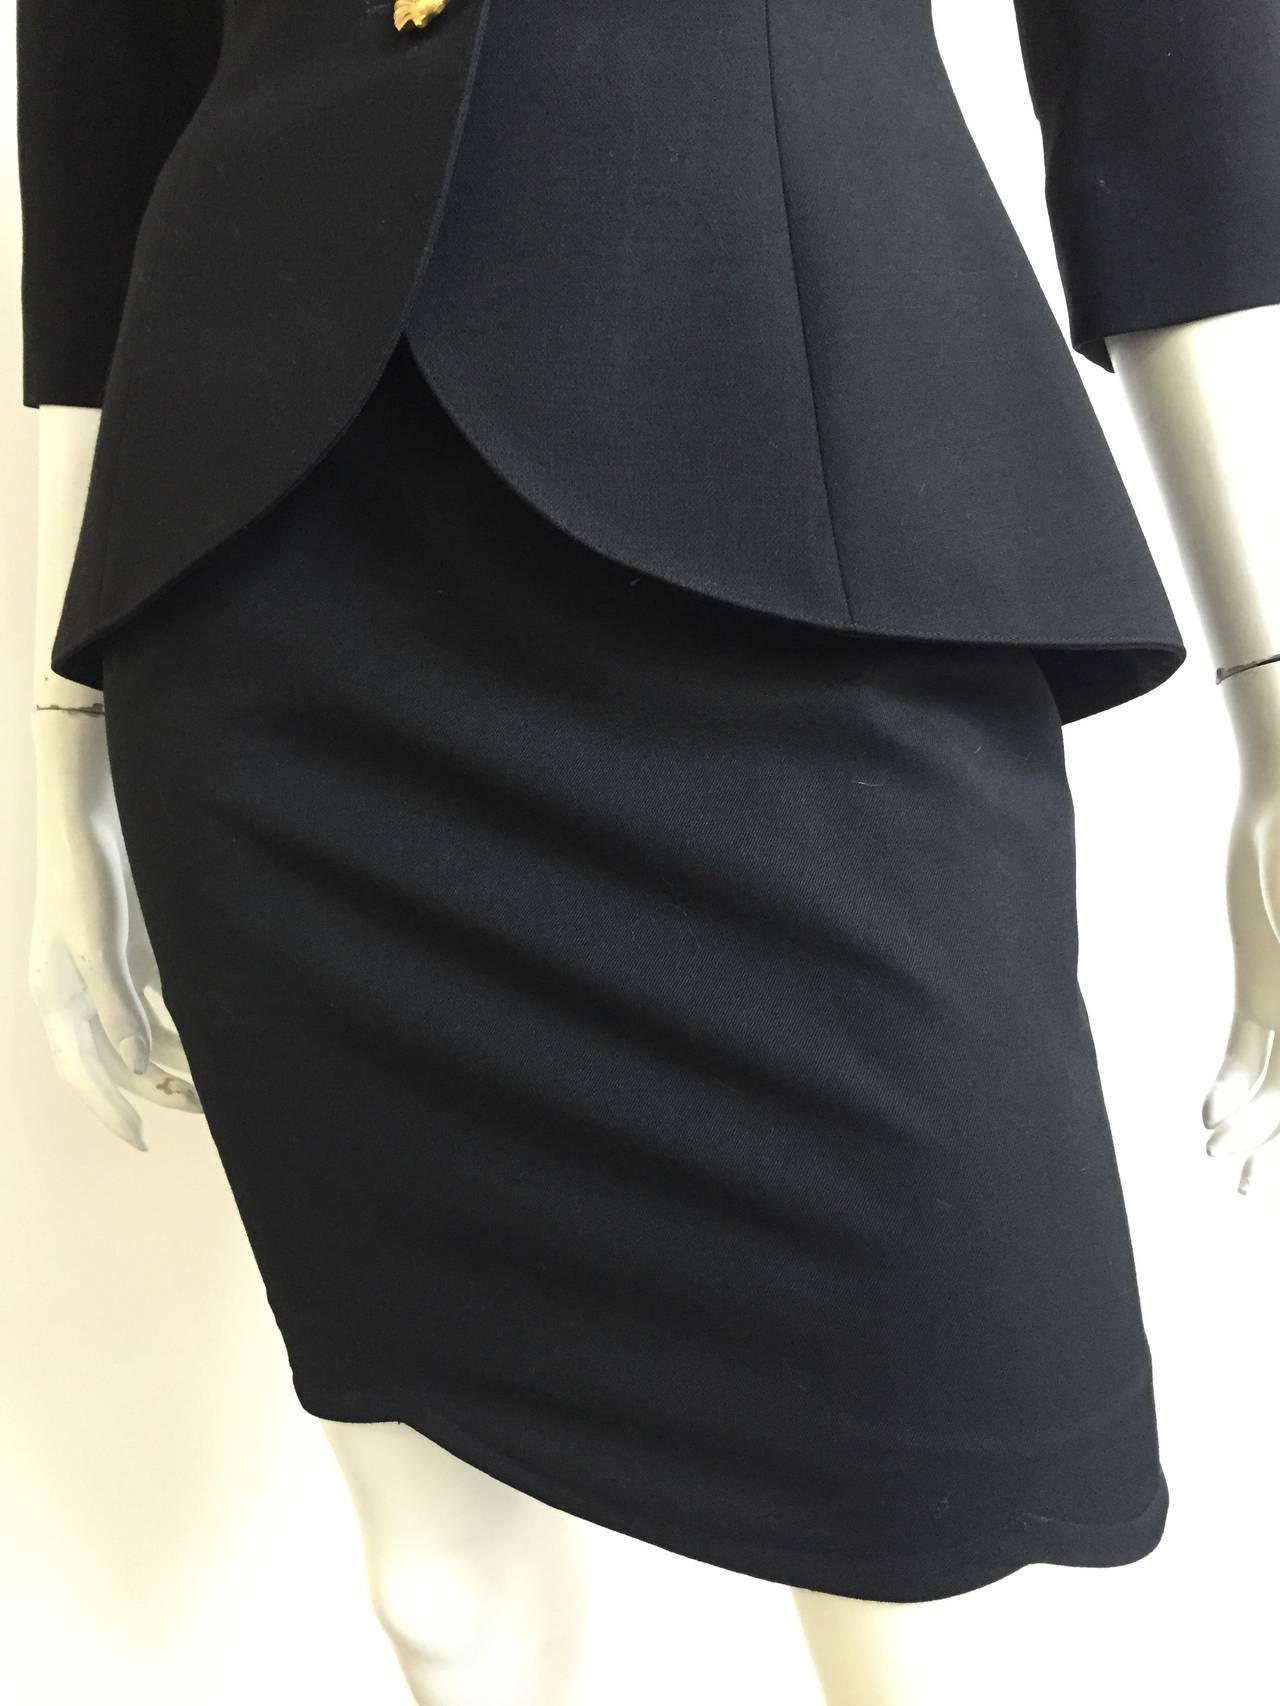 Lolita Lempicka Paris 80s black skirt suit size 4. 1